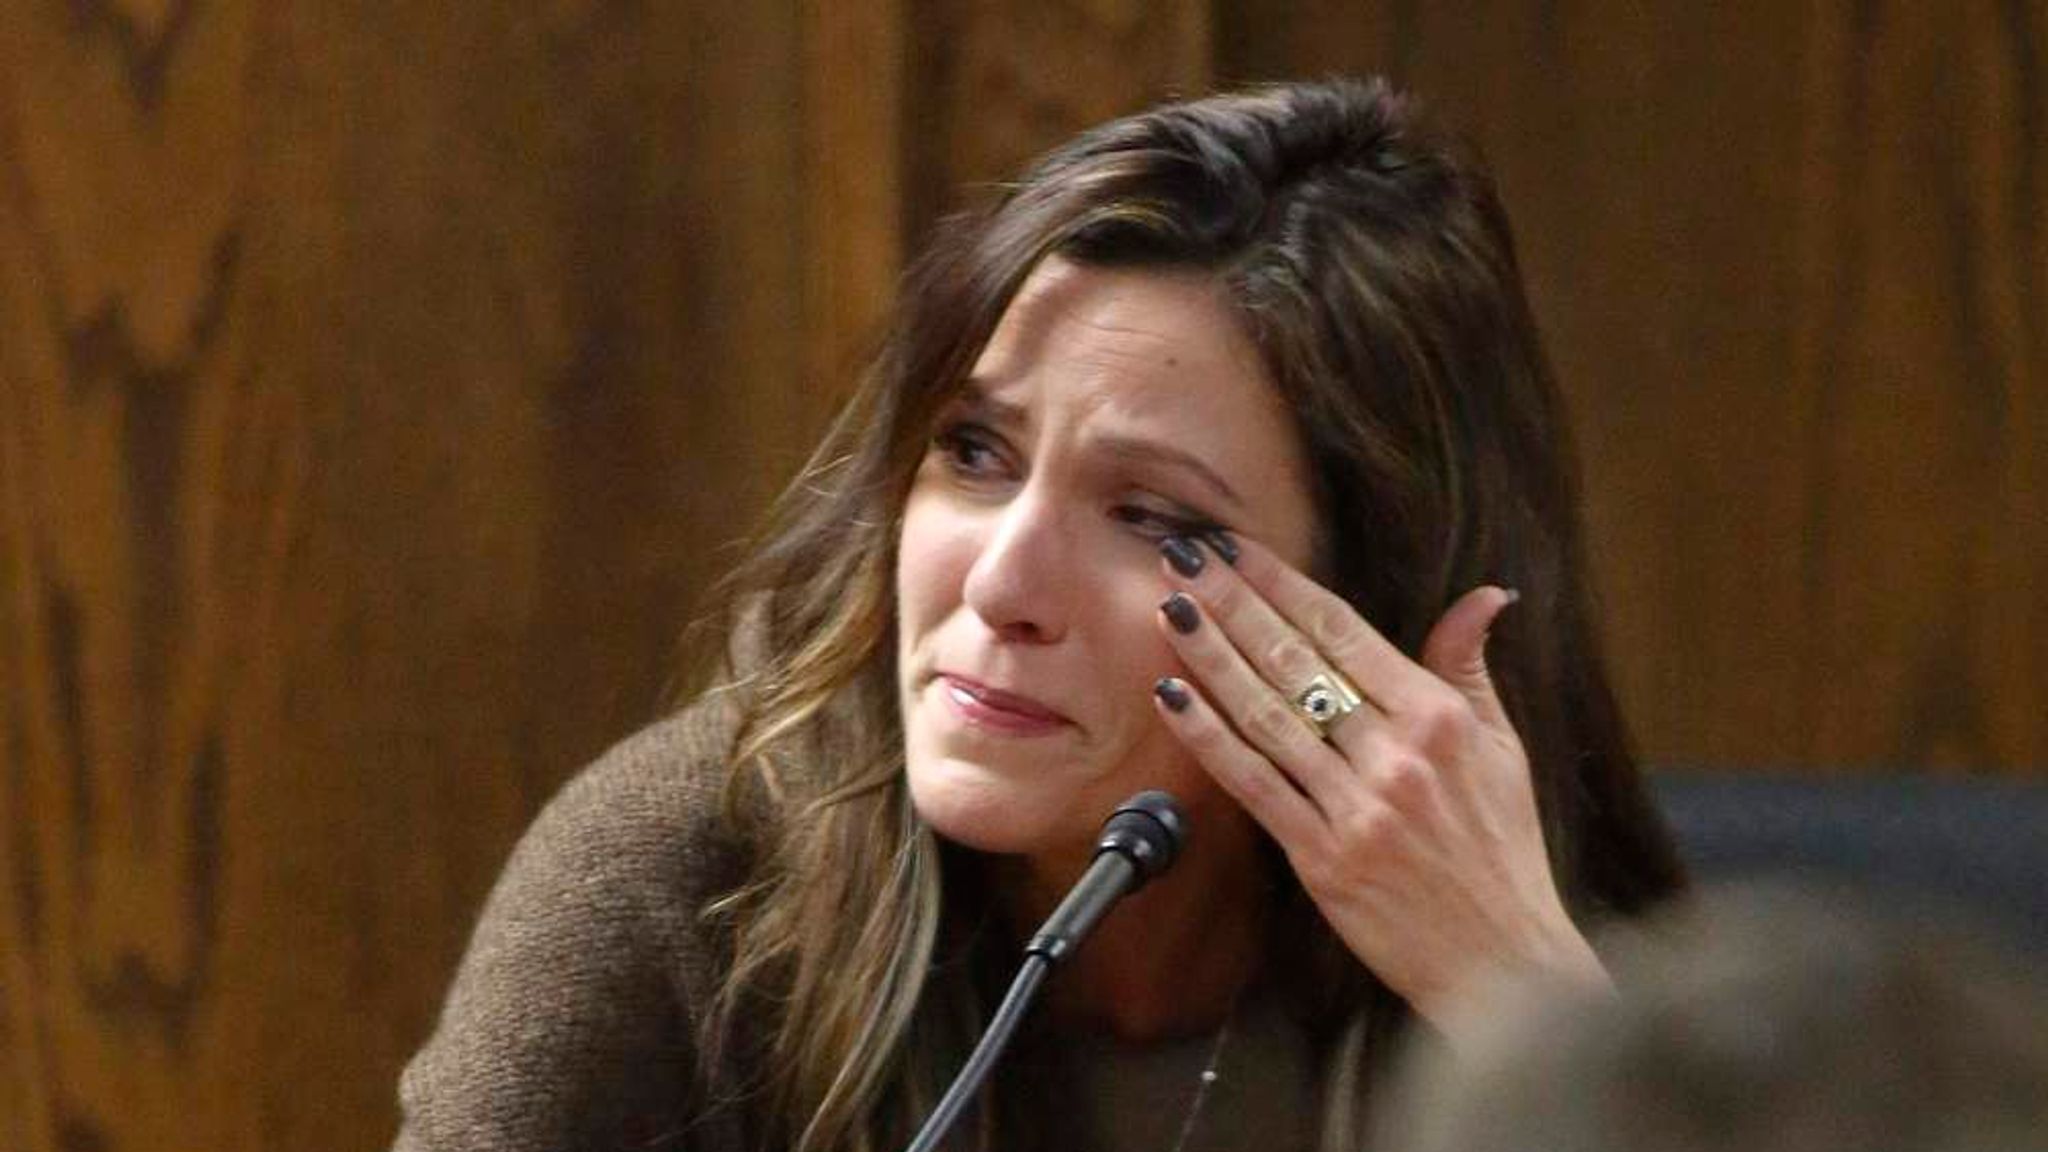 Chris Kyle's widow, Taya Kyle, wipes away tears as she testifies. 